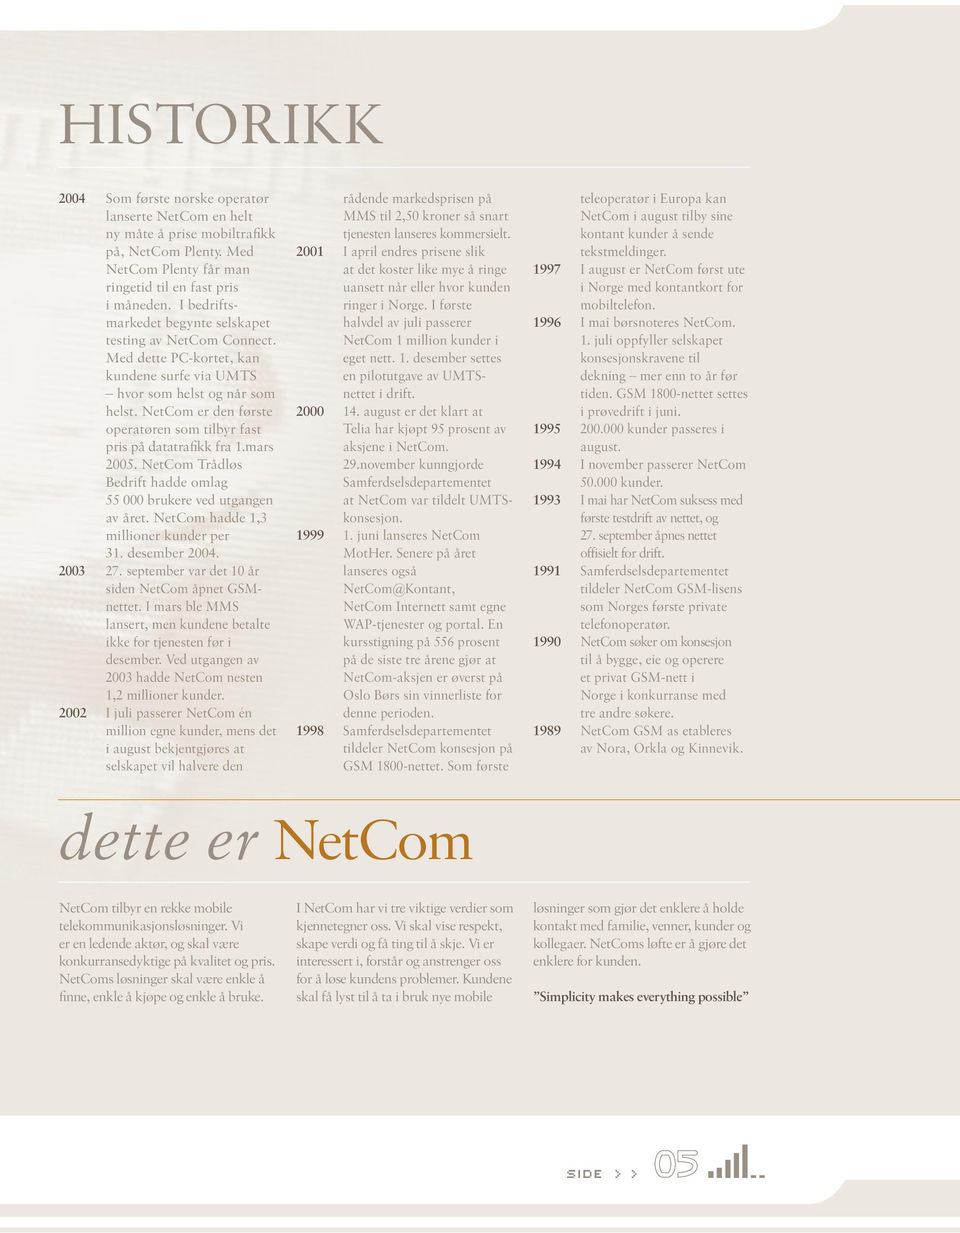 NetCom er den første operatøren som tilbyr fast pris på datatrafikk fra 1.mars 2005. NetCom Trådløs Bedrift hadde omlag 55 000 brukere ved utgangen av året. NetCom hadde 1, millioner kunder per 1.